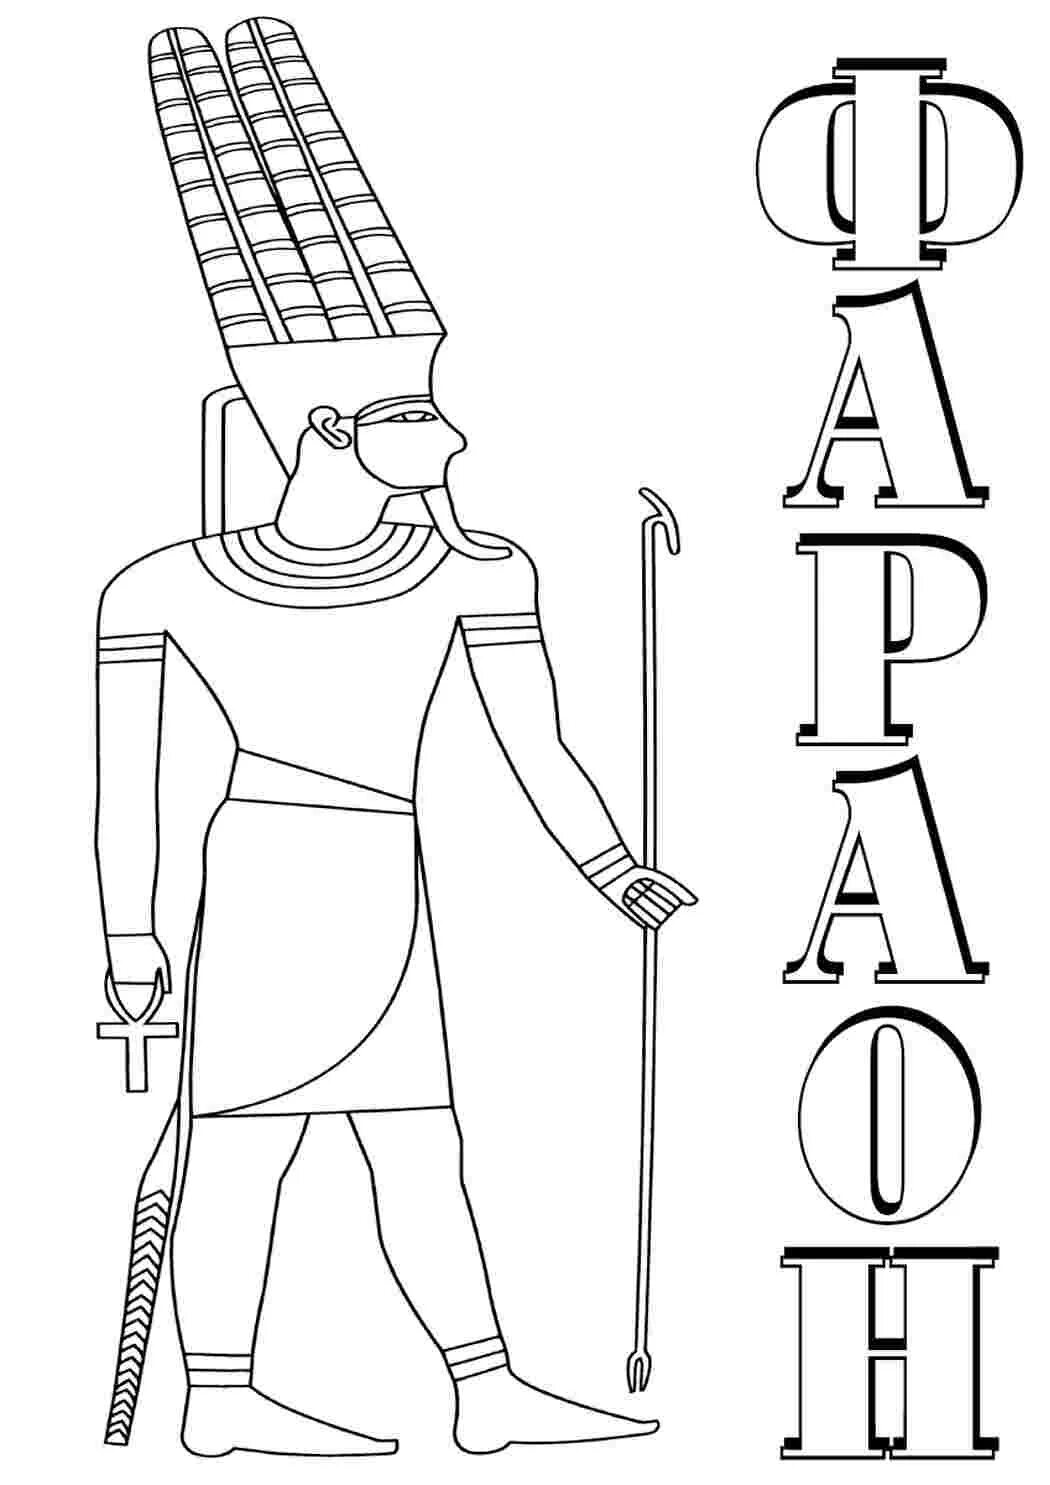 Рисунок карандашом фараон правитель Египта. Египет. Раскраска. Фараон раскраска. Раскраска фараона древнего Египта.